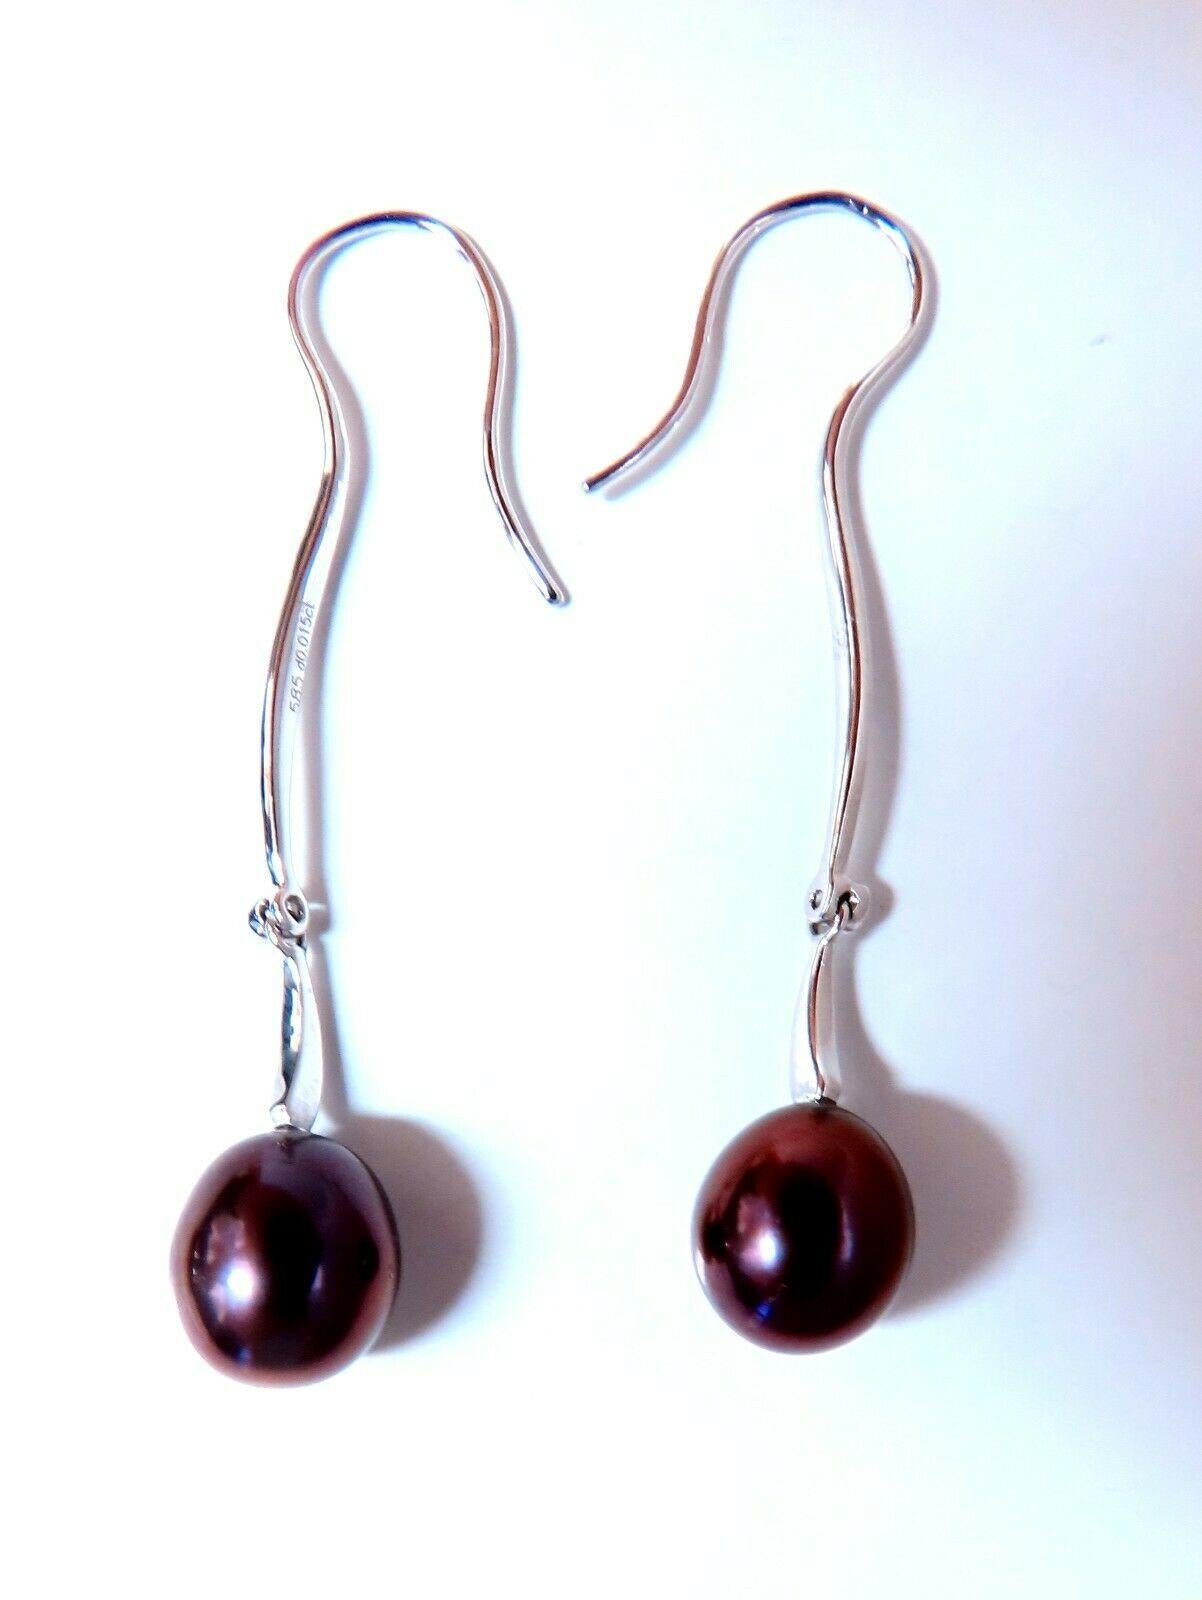 Boucles d'oreilles pendantes en perles d'eau douce.

perles de 8 mm de large

Excellent lustre AAA 

or blanc 14 carats 3,4 g.

Les boucles d'oreilles mesurent 1,75 pouce de long

Comfortable Wire